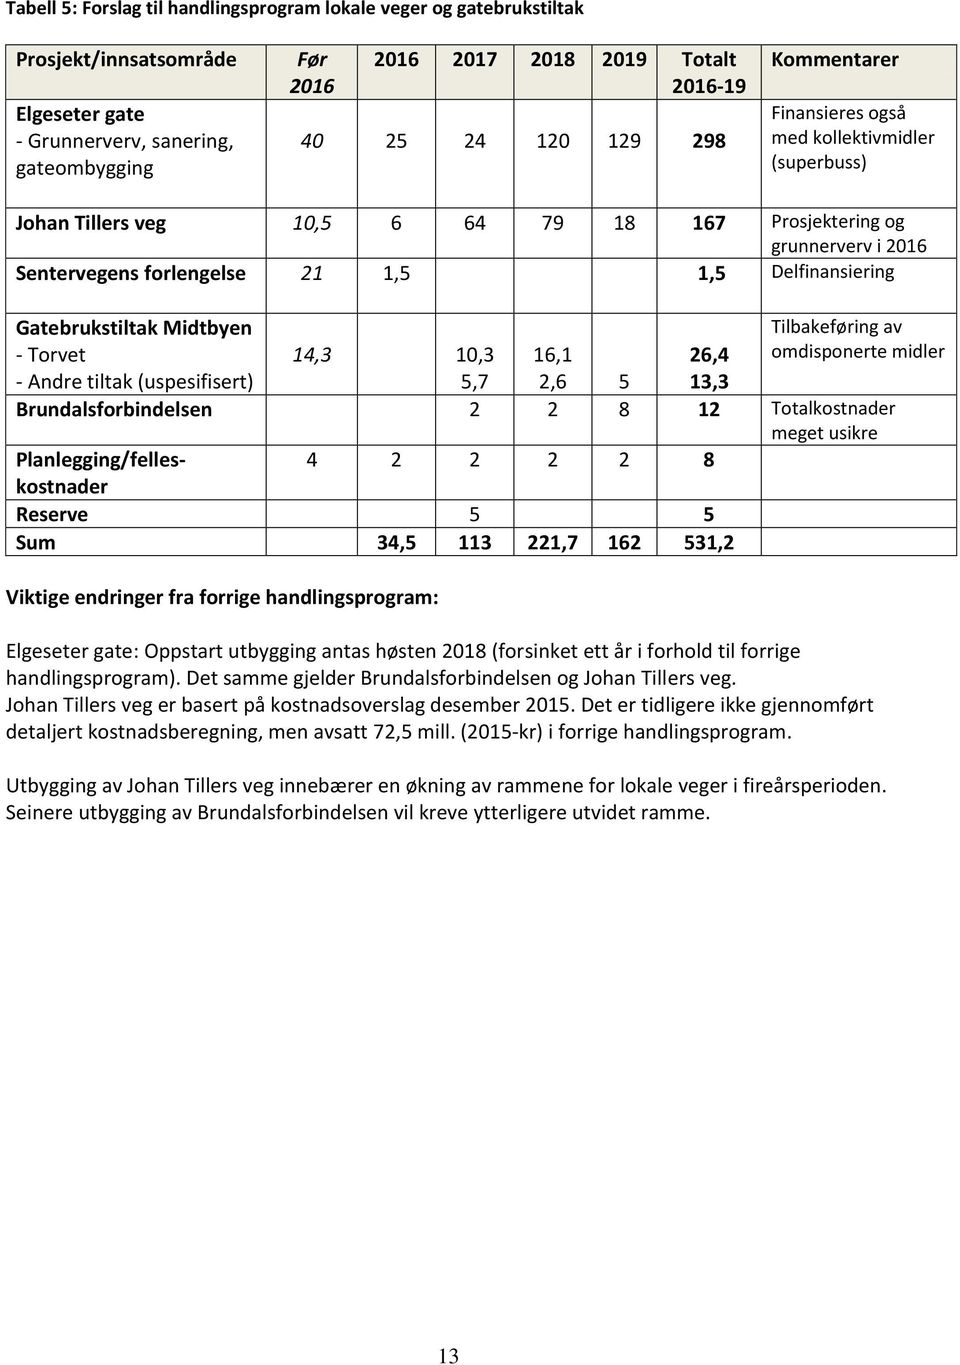 Delfinansiering Gatebrukstiltak Midtbyen - Torvet - Andre tiltak (uspesifisert) Tilbakeføring av omdisponerte midler 14,3 10,3 16,1 26,4 5,7 2,6 5 13,3 Brundalsforbindelsen 2 2 8 12 Totalkostnader